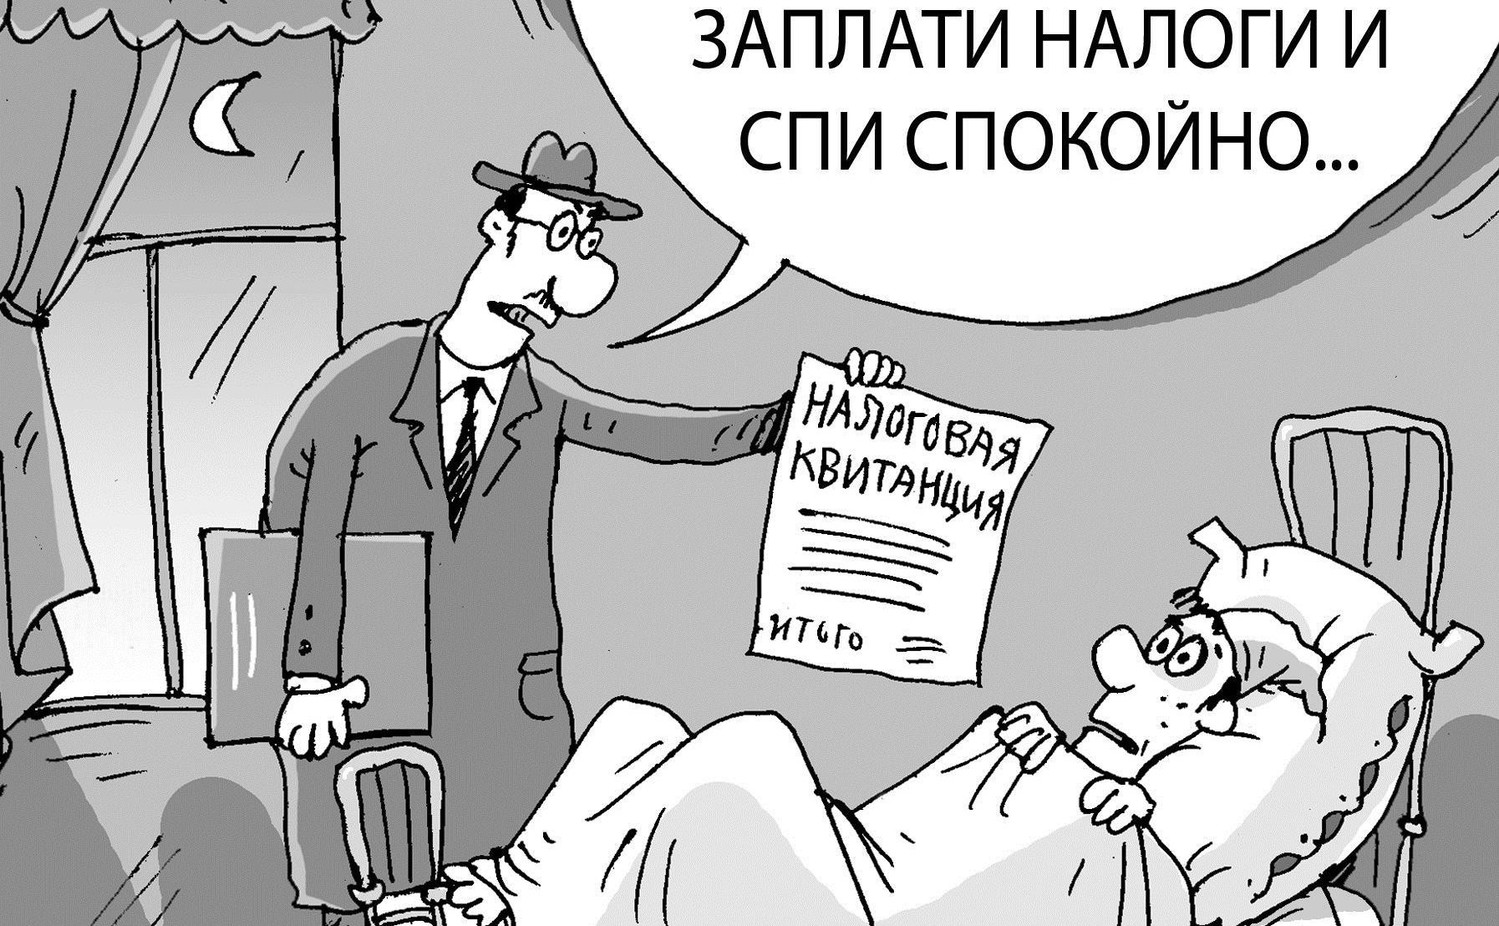 Все москвичи получат новые налоговые платежки до 20 октября